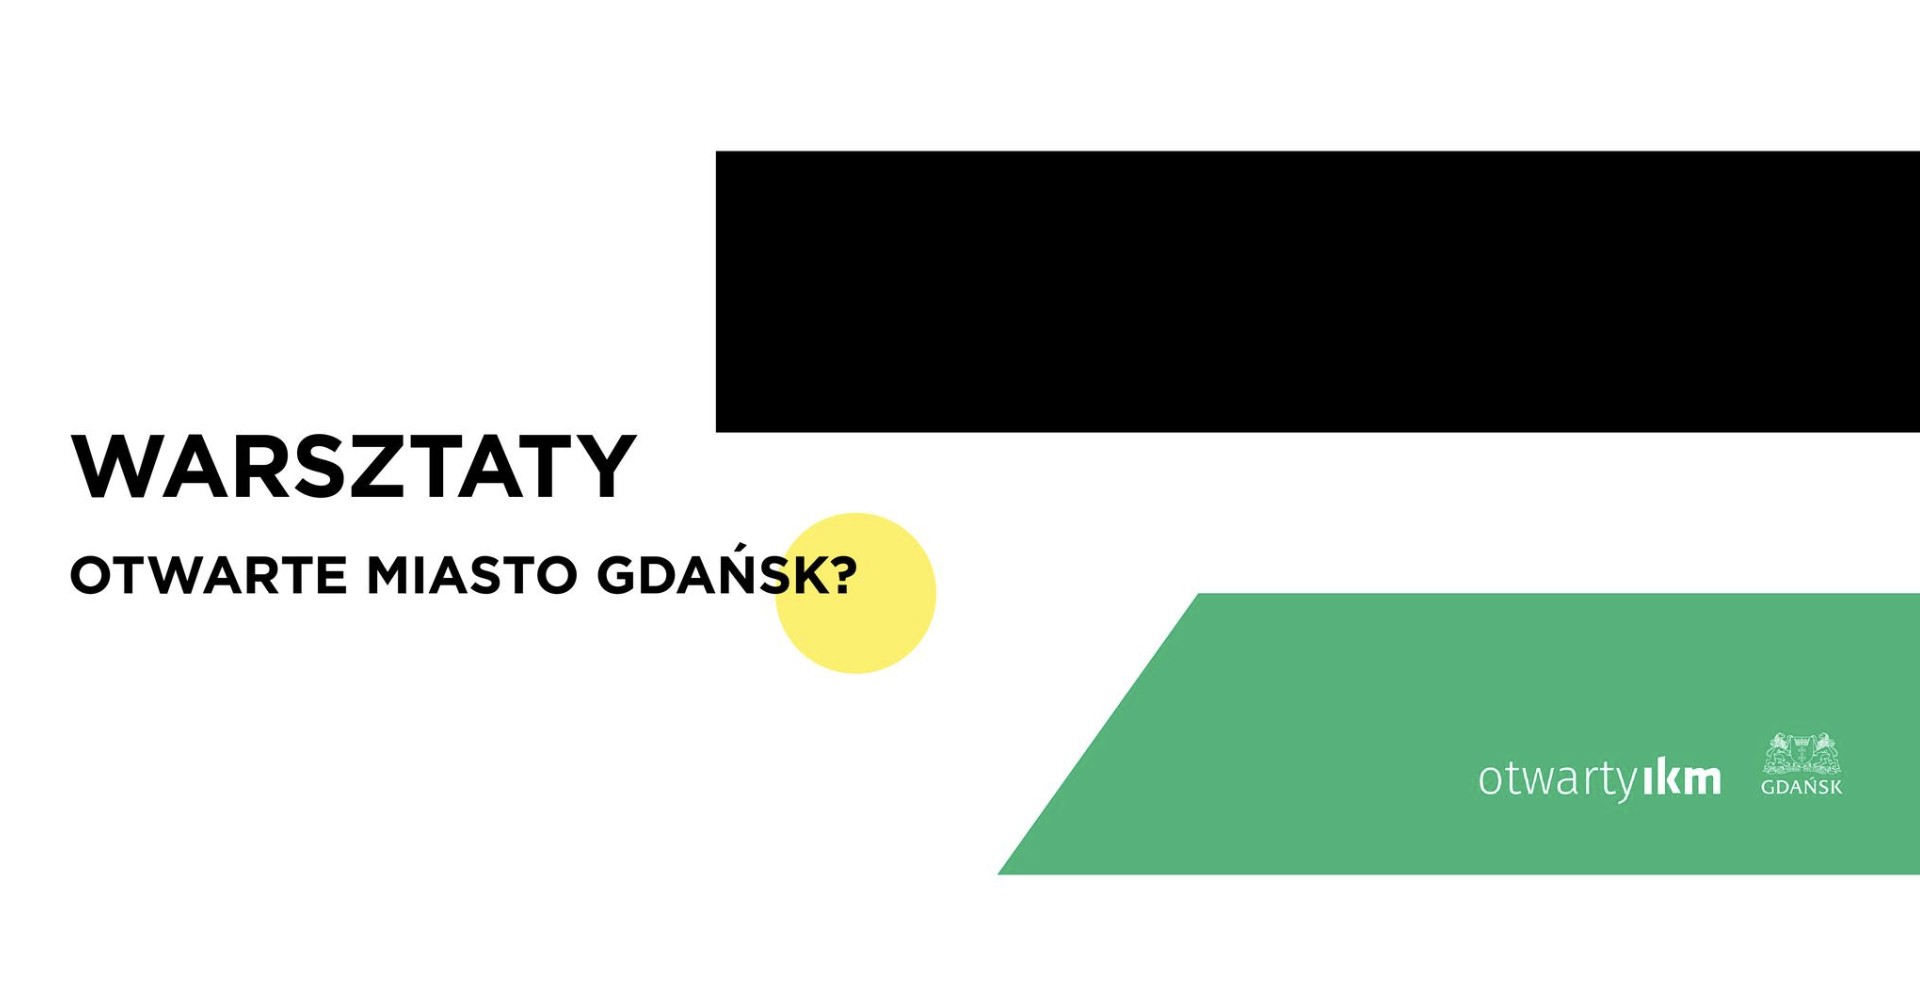 Otwarte miasto Gdańsk?